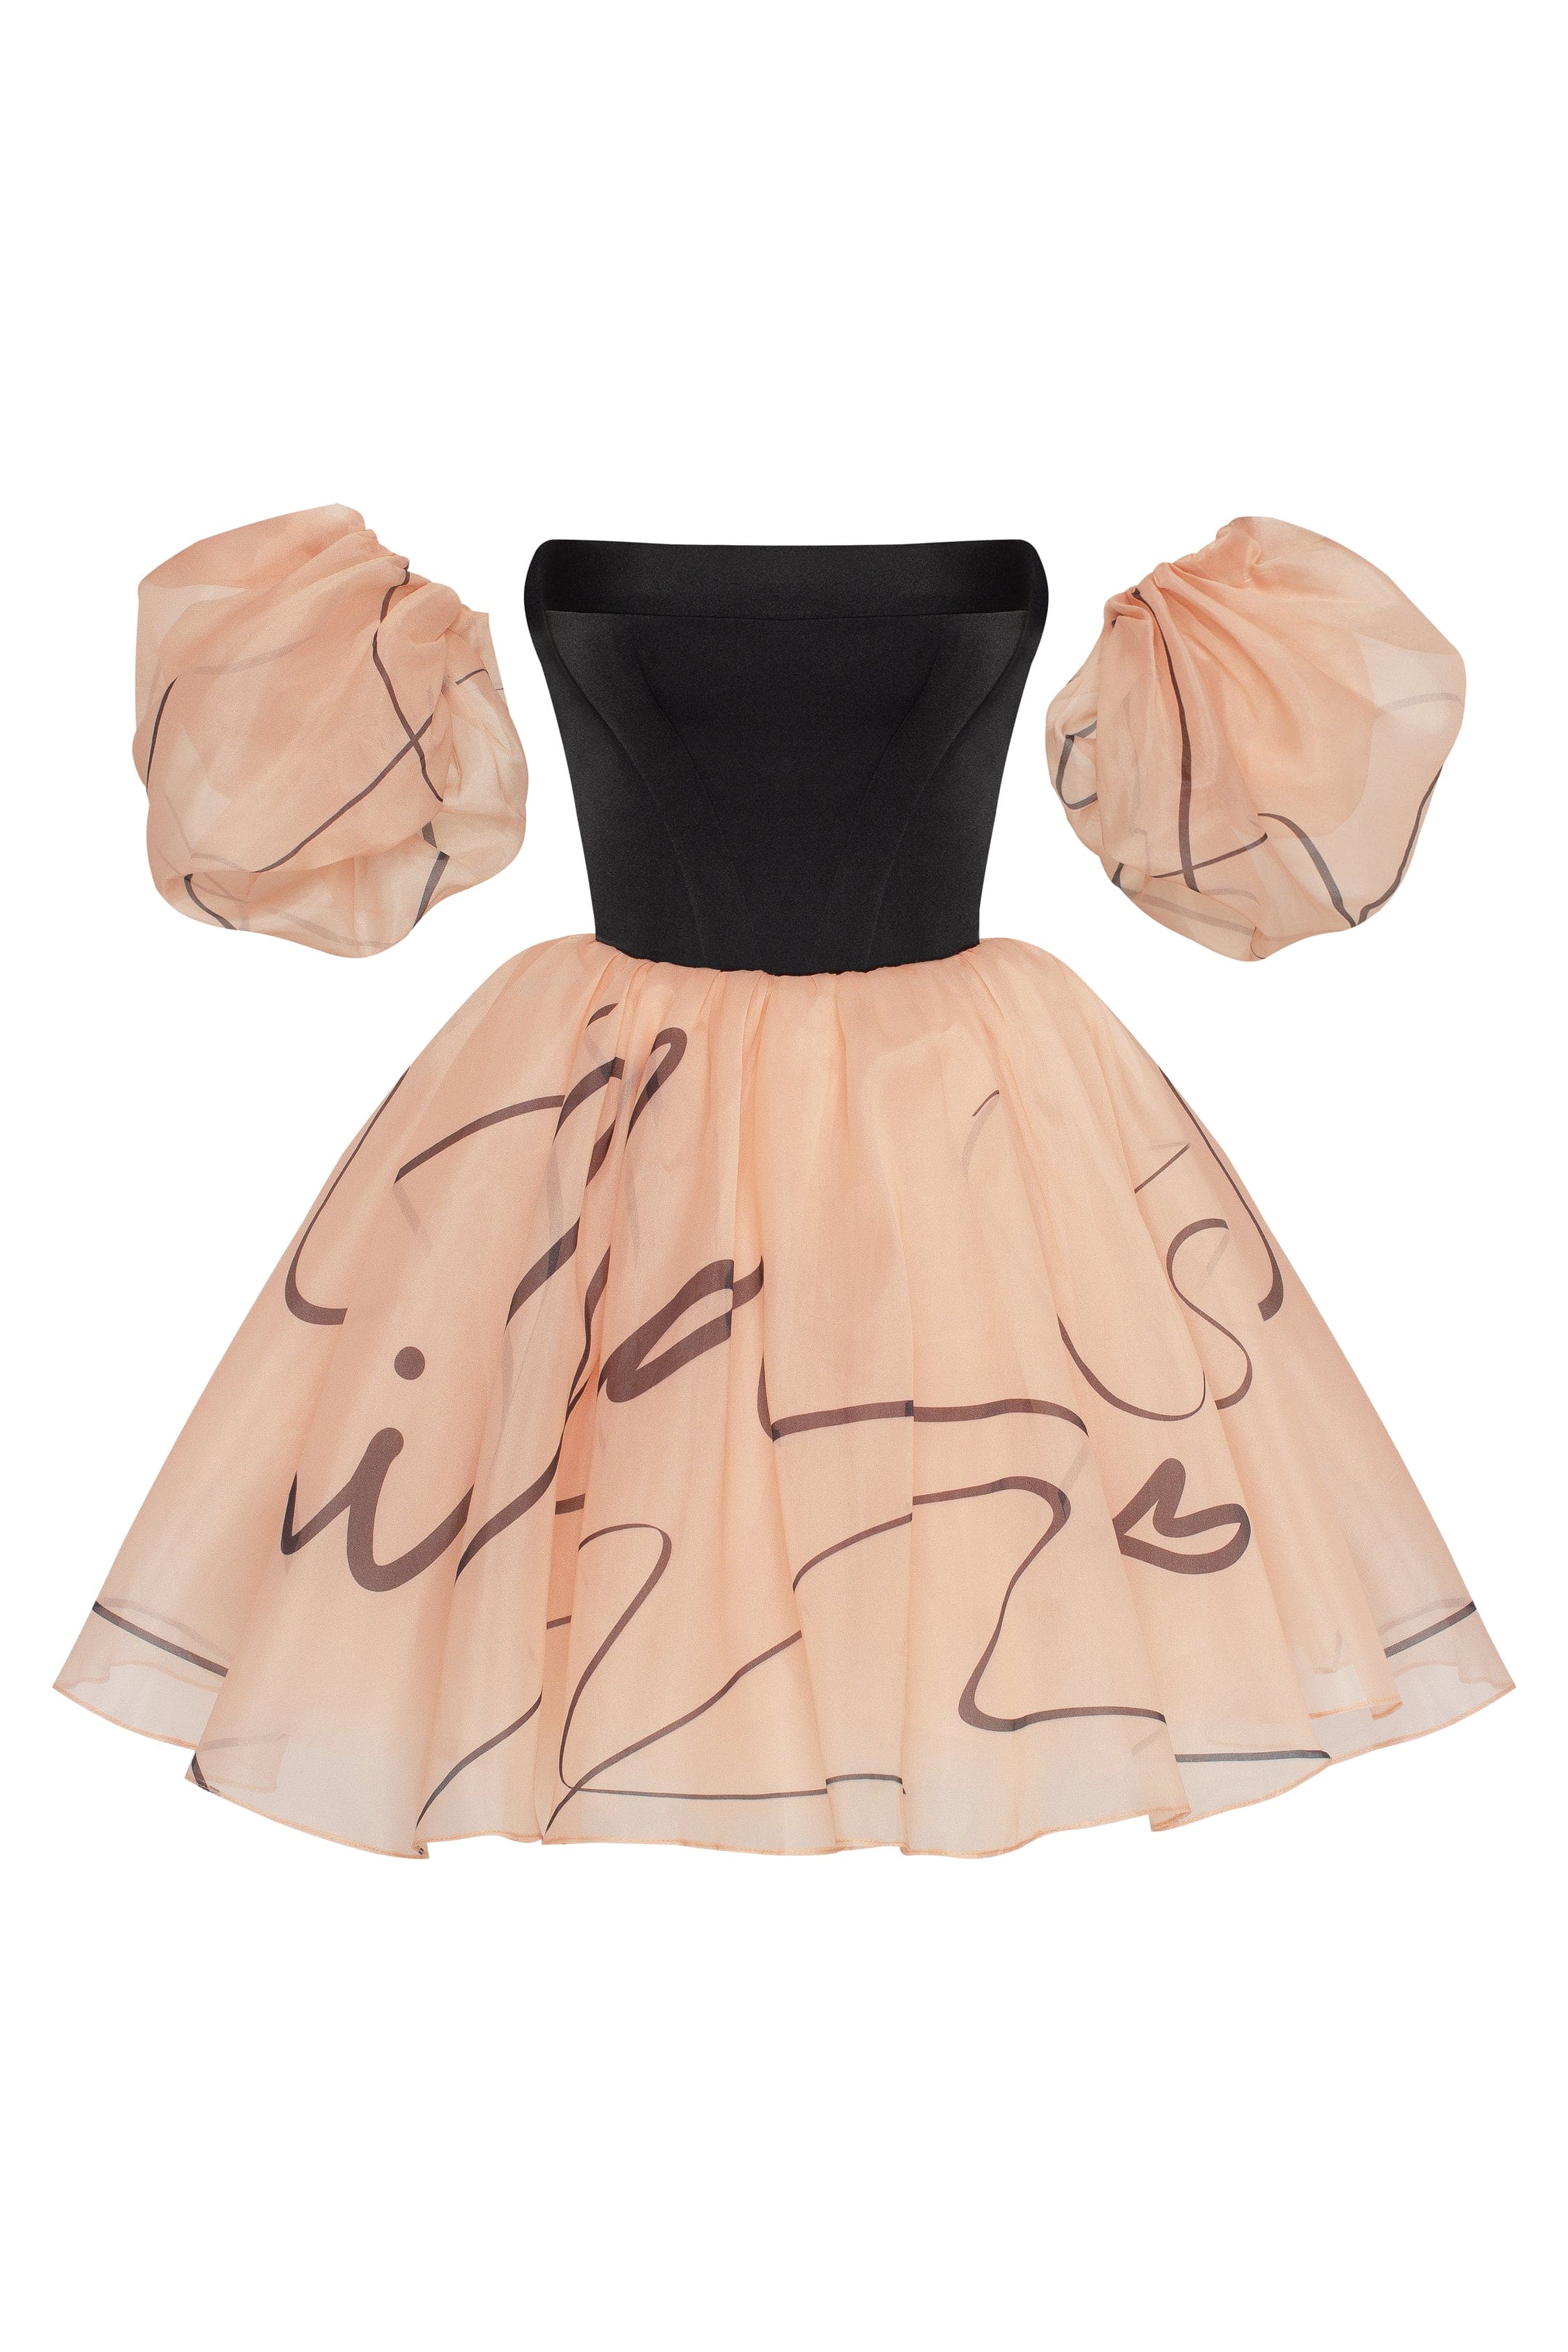 Puffy mini dress with Milla's signature, Xo Xo M womens